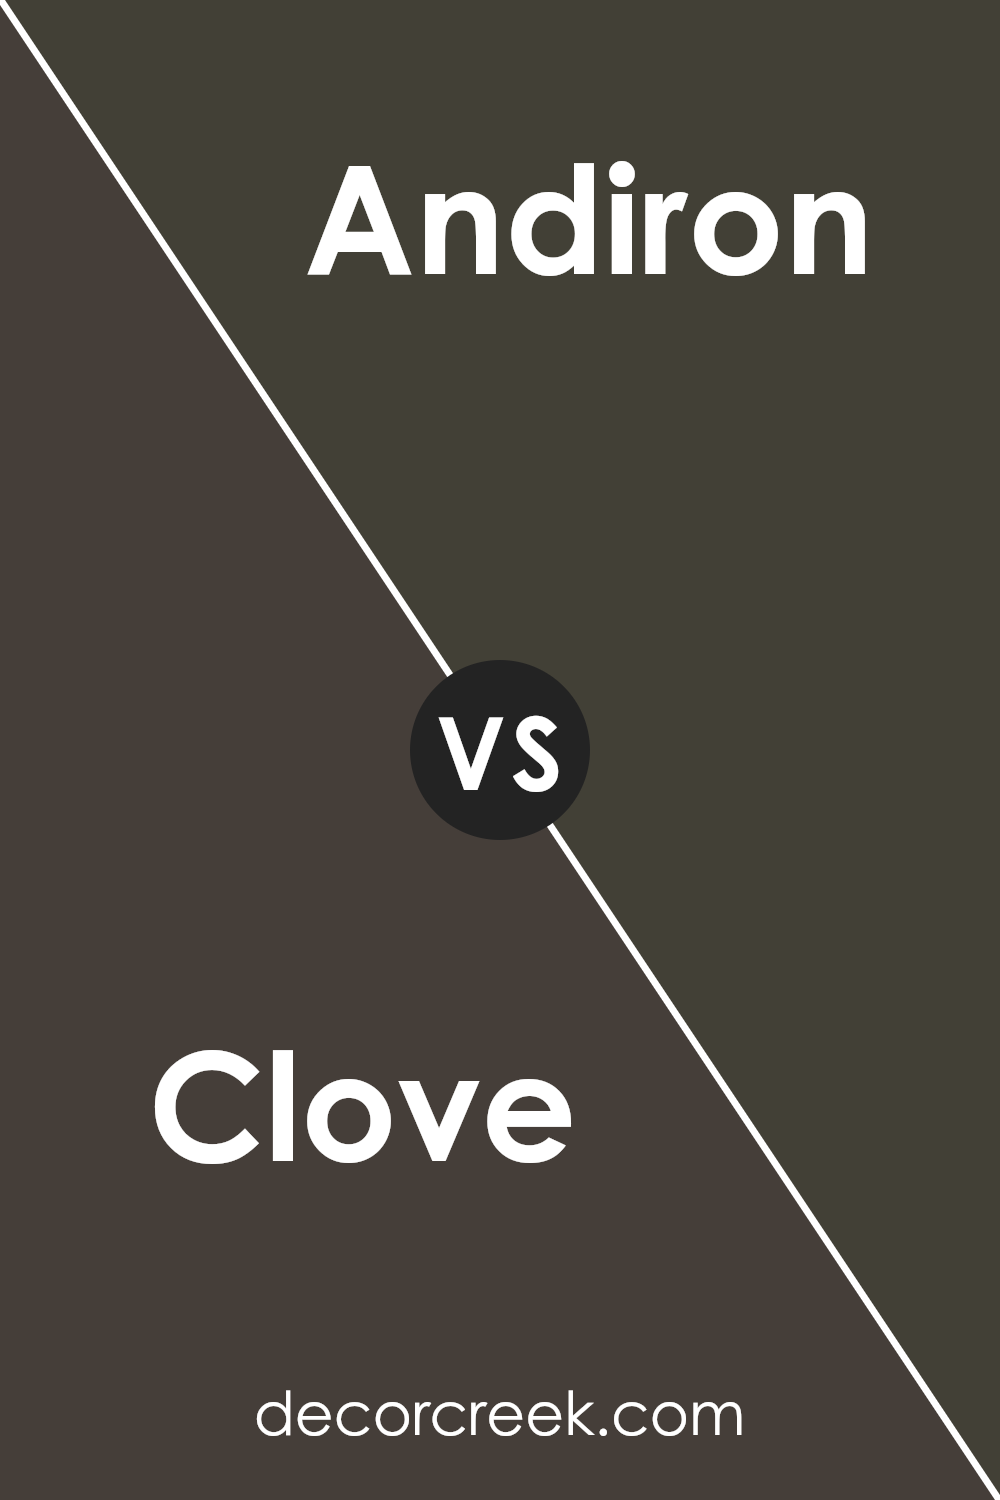 clove_sw_9605_vs_andiron_sw_6174